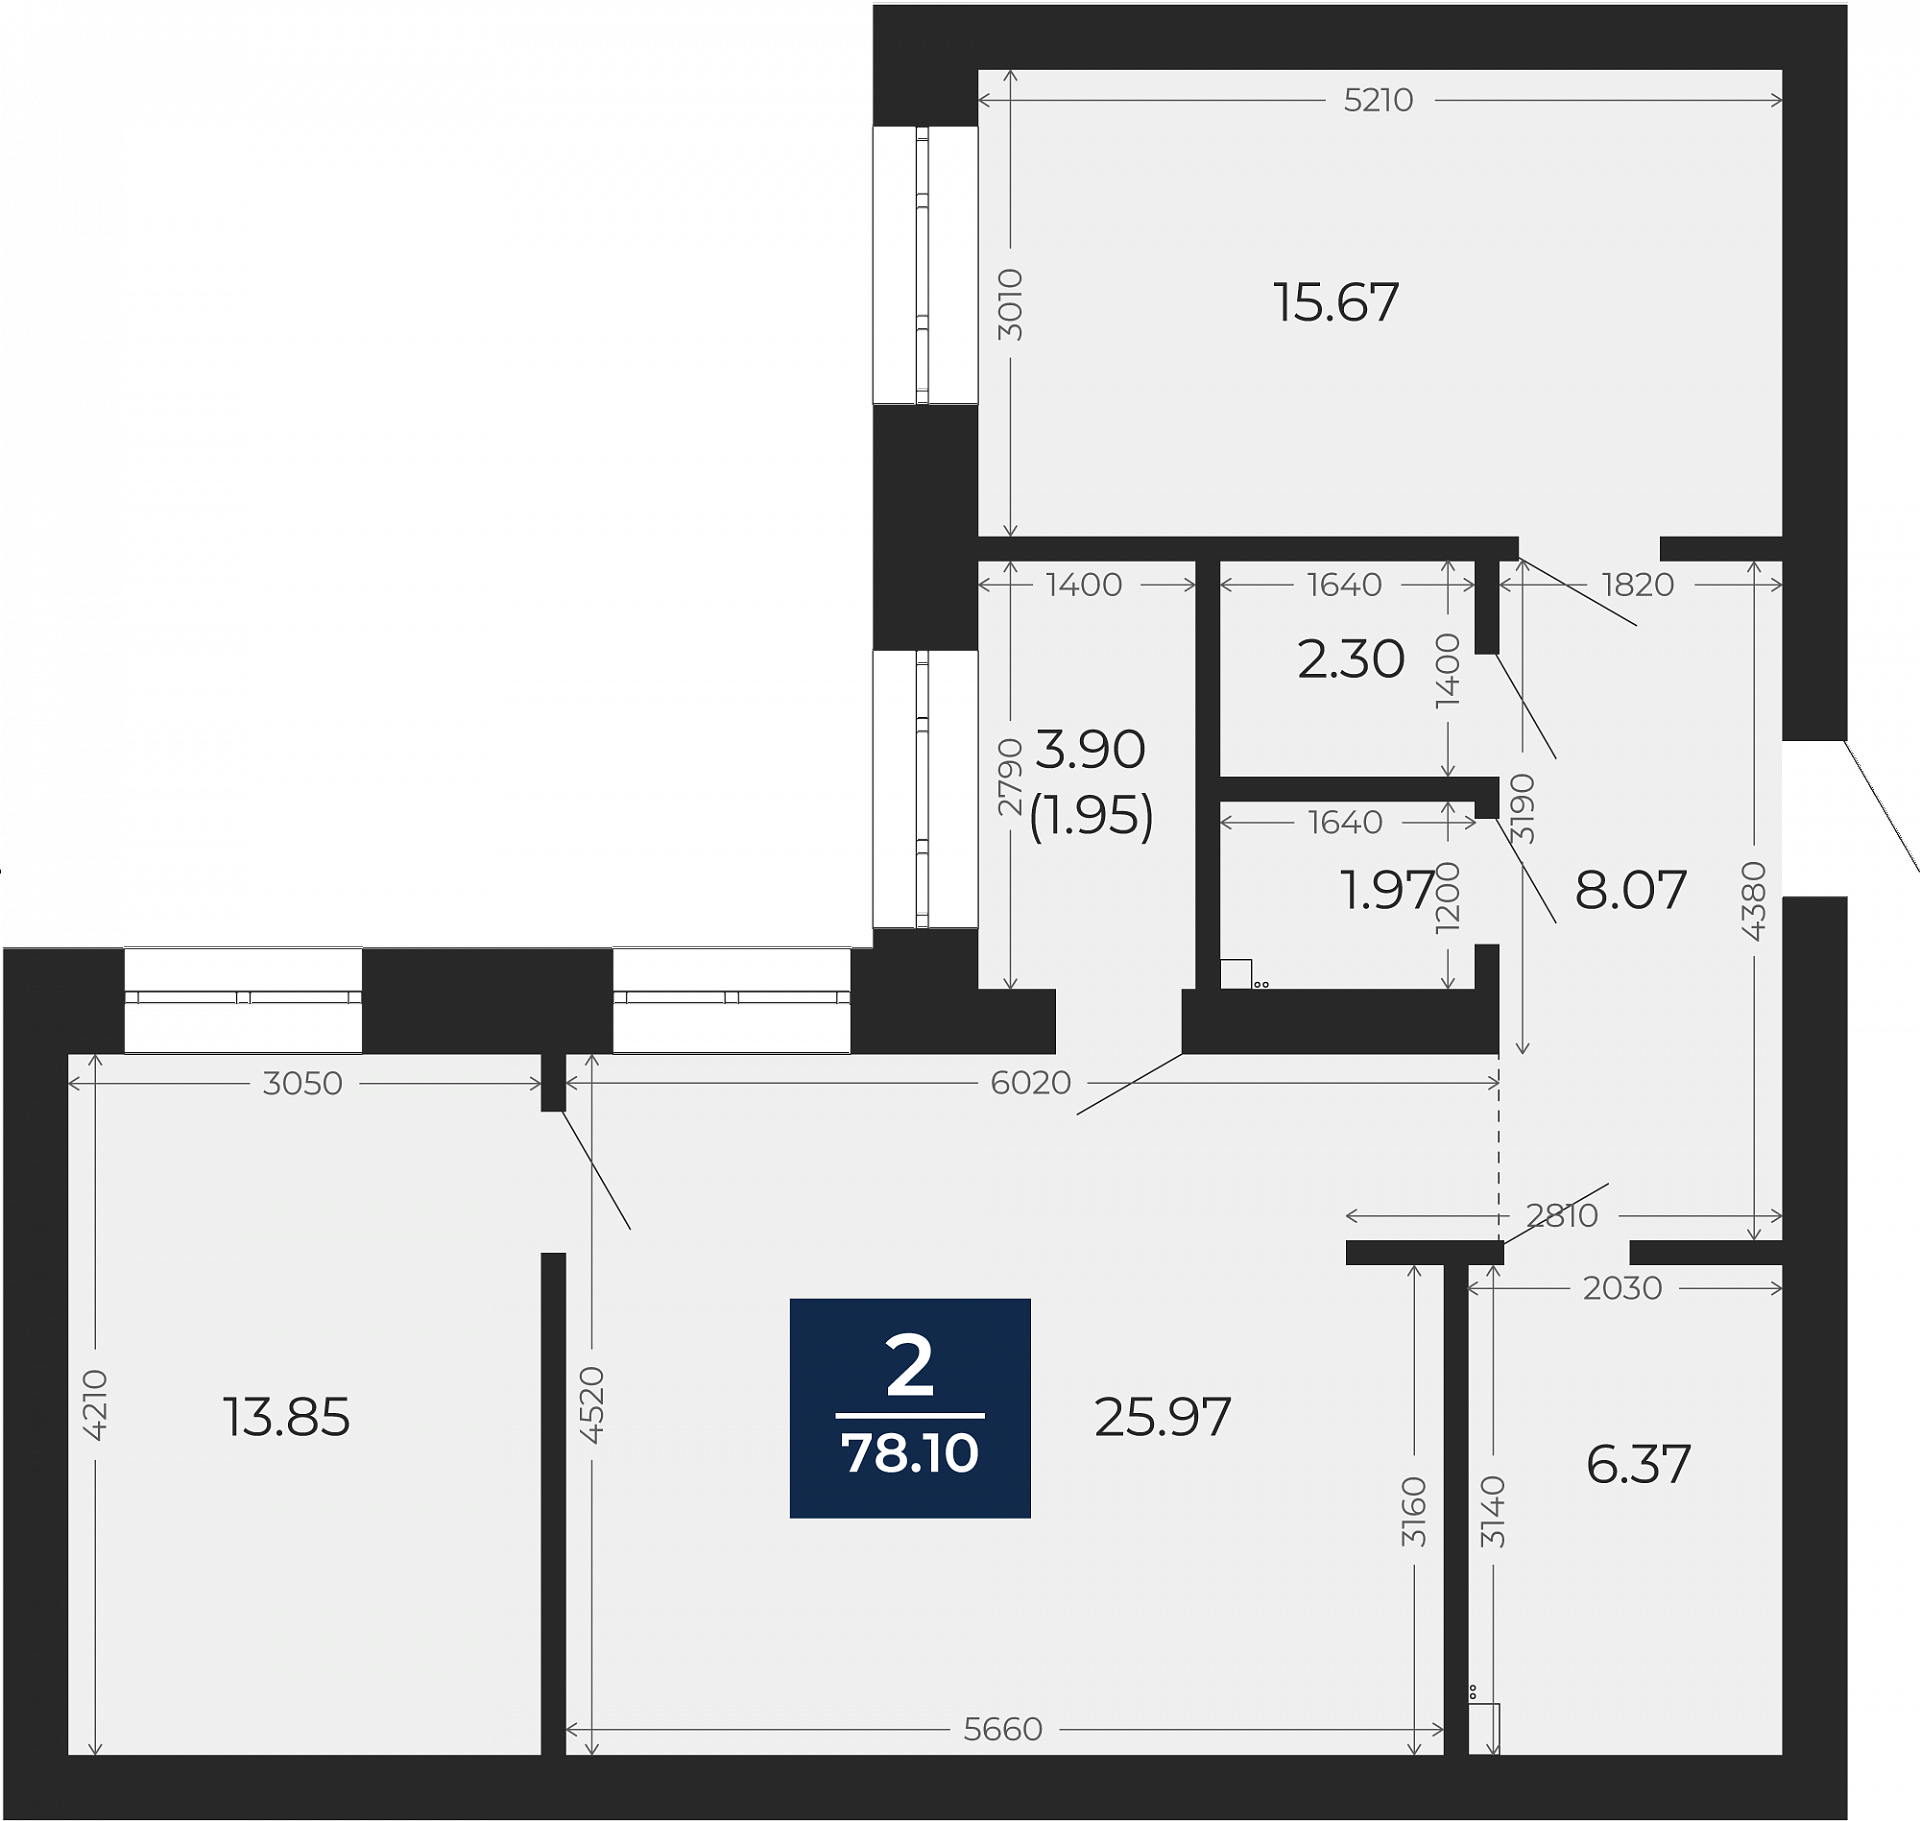 Квартира № 150, 2-комнатная, 78.1 кв. м, 5 этаж